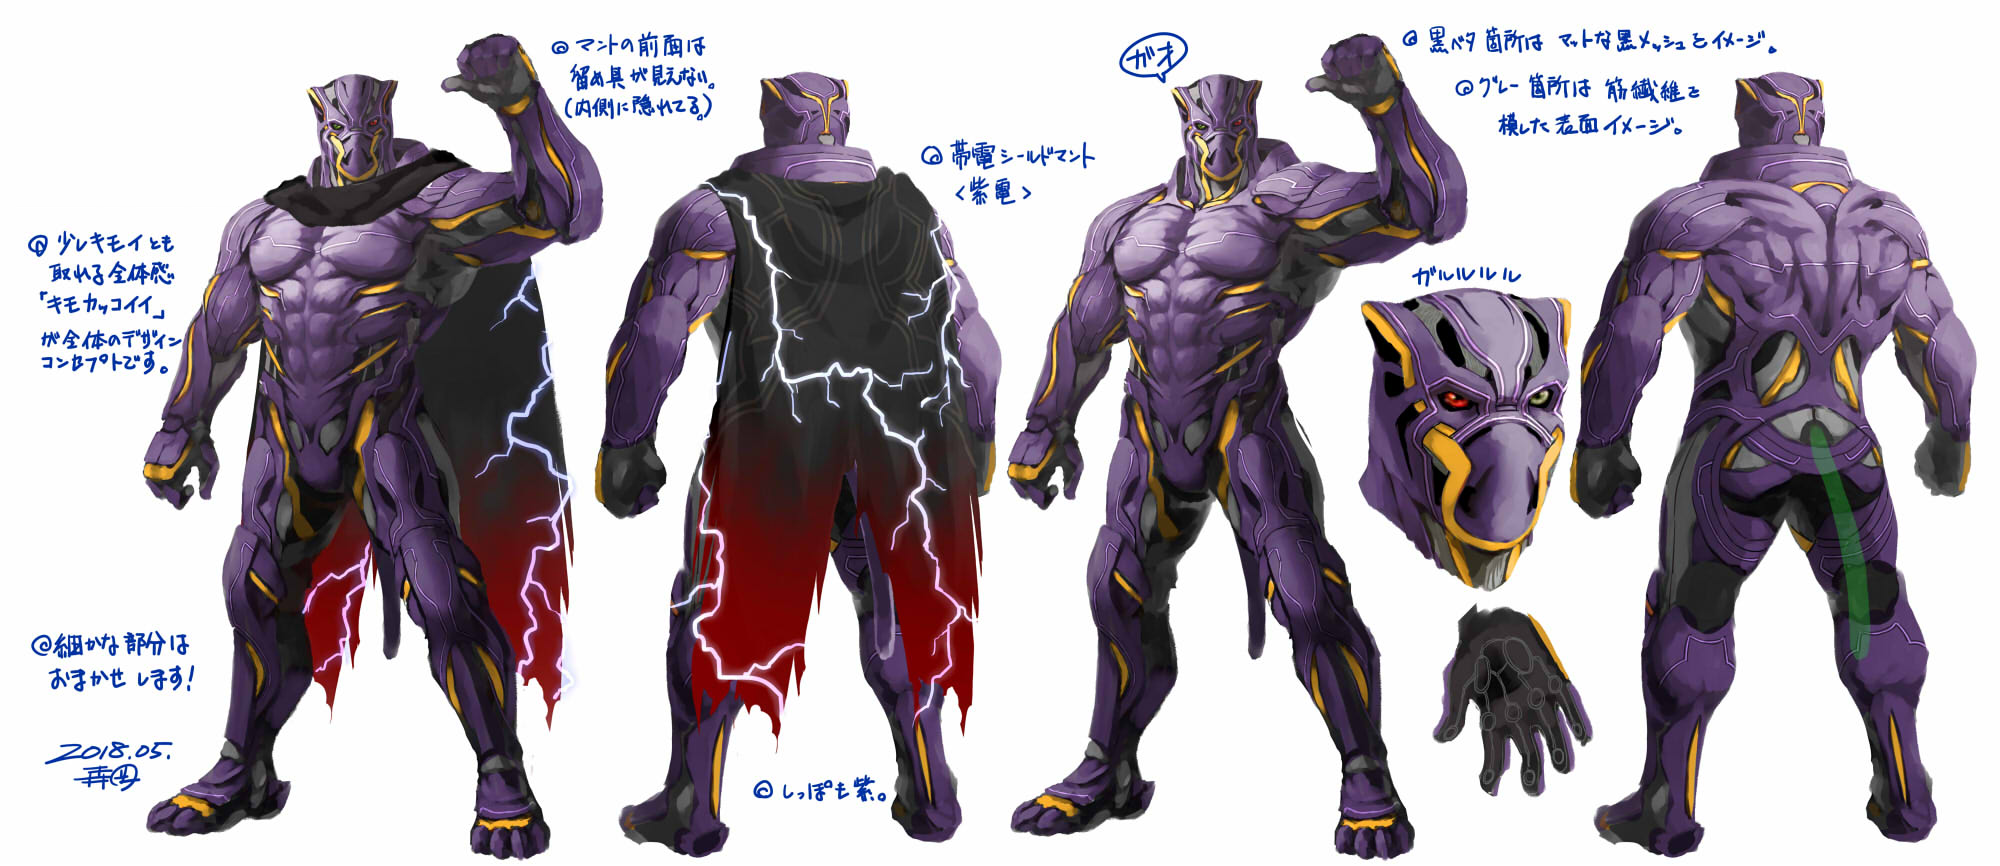 armor king tekken 7